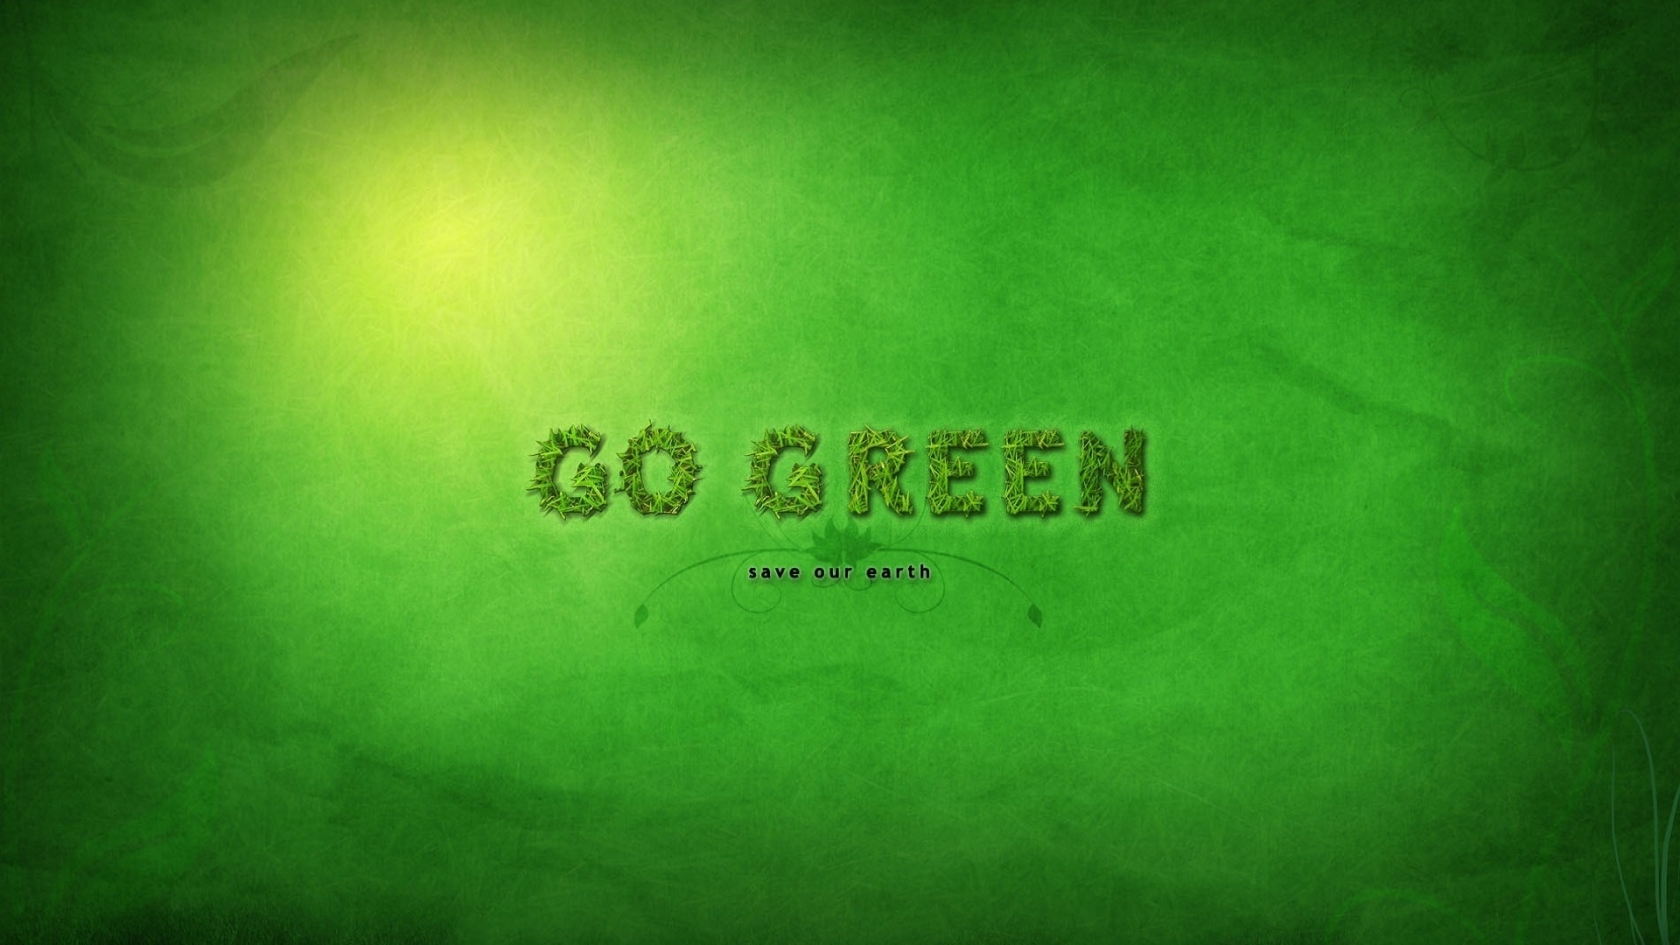 Go Green for 1680 x 945 HDTV resolution